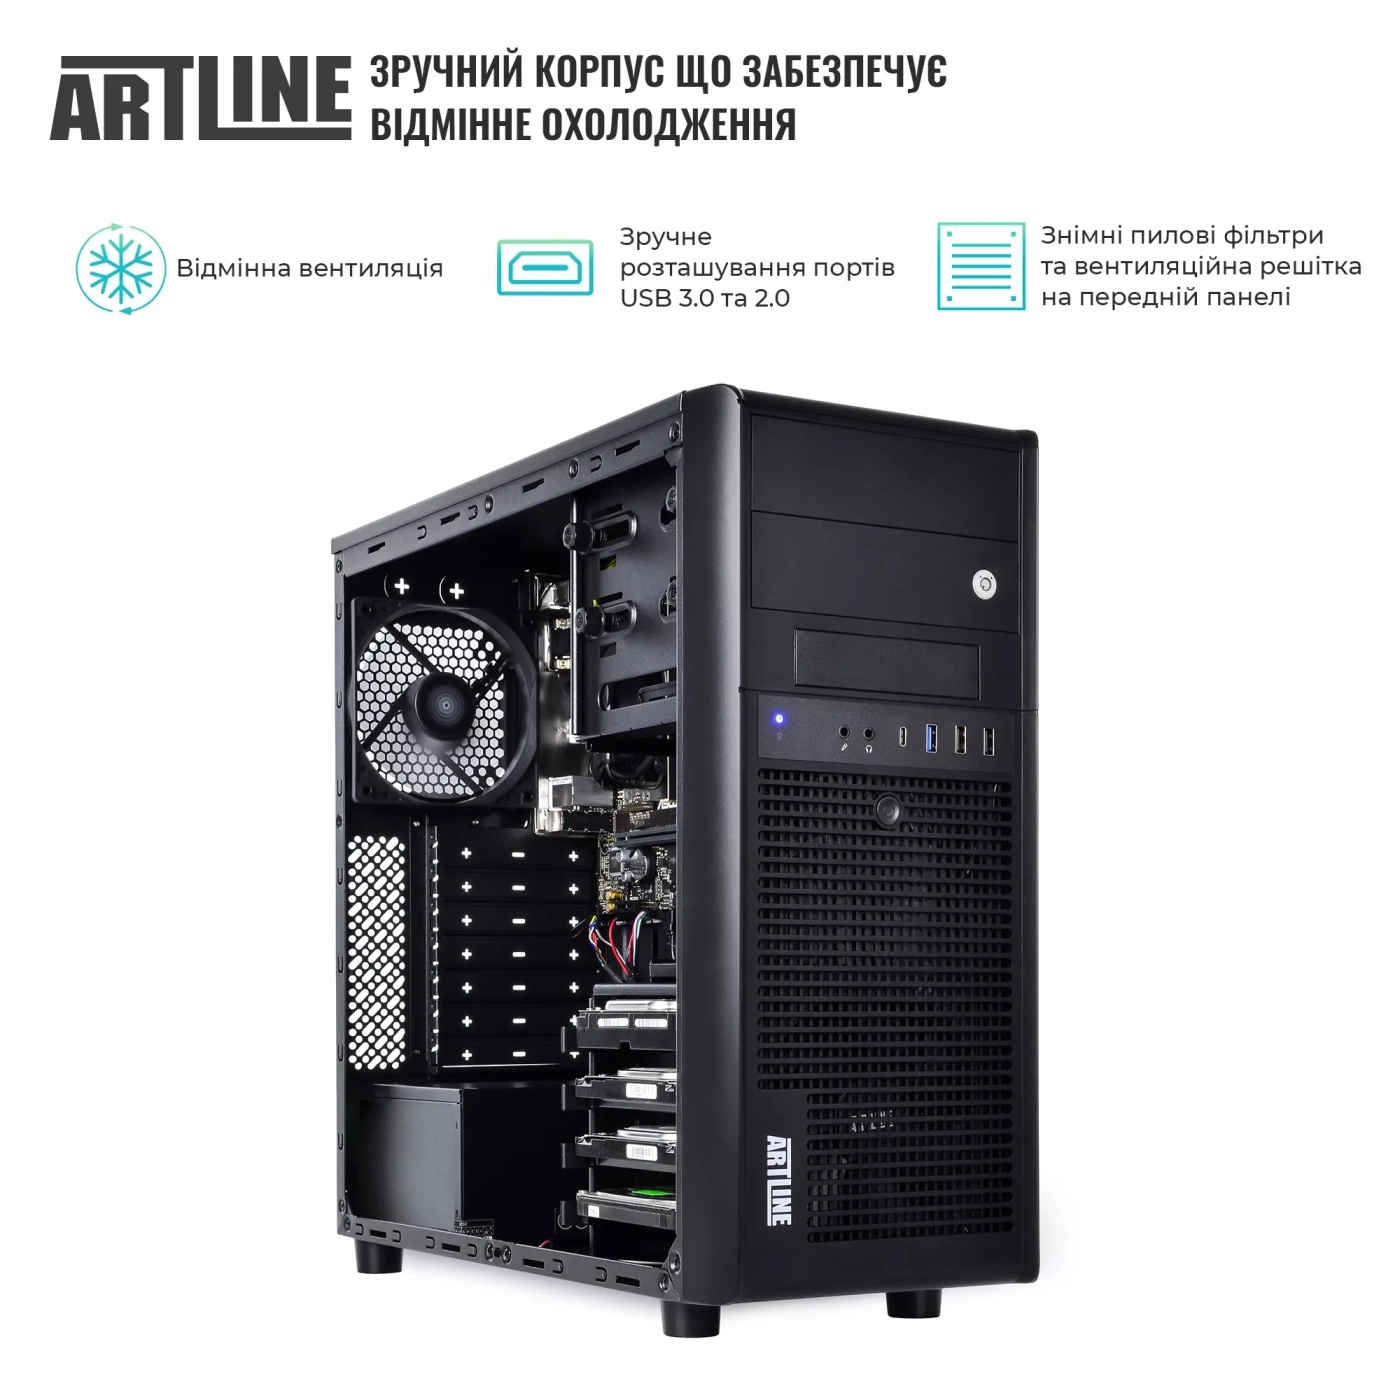 Купить Сервер ARTLINE Business T38 (T38v24) - фото 3